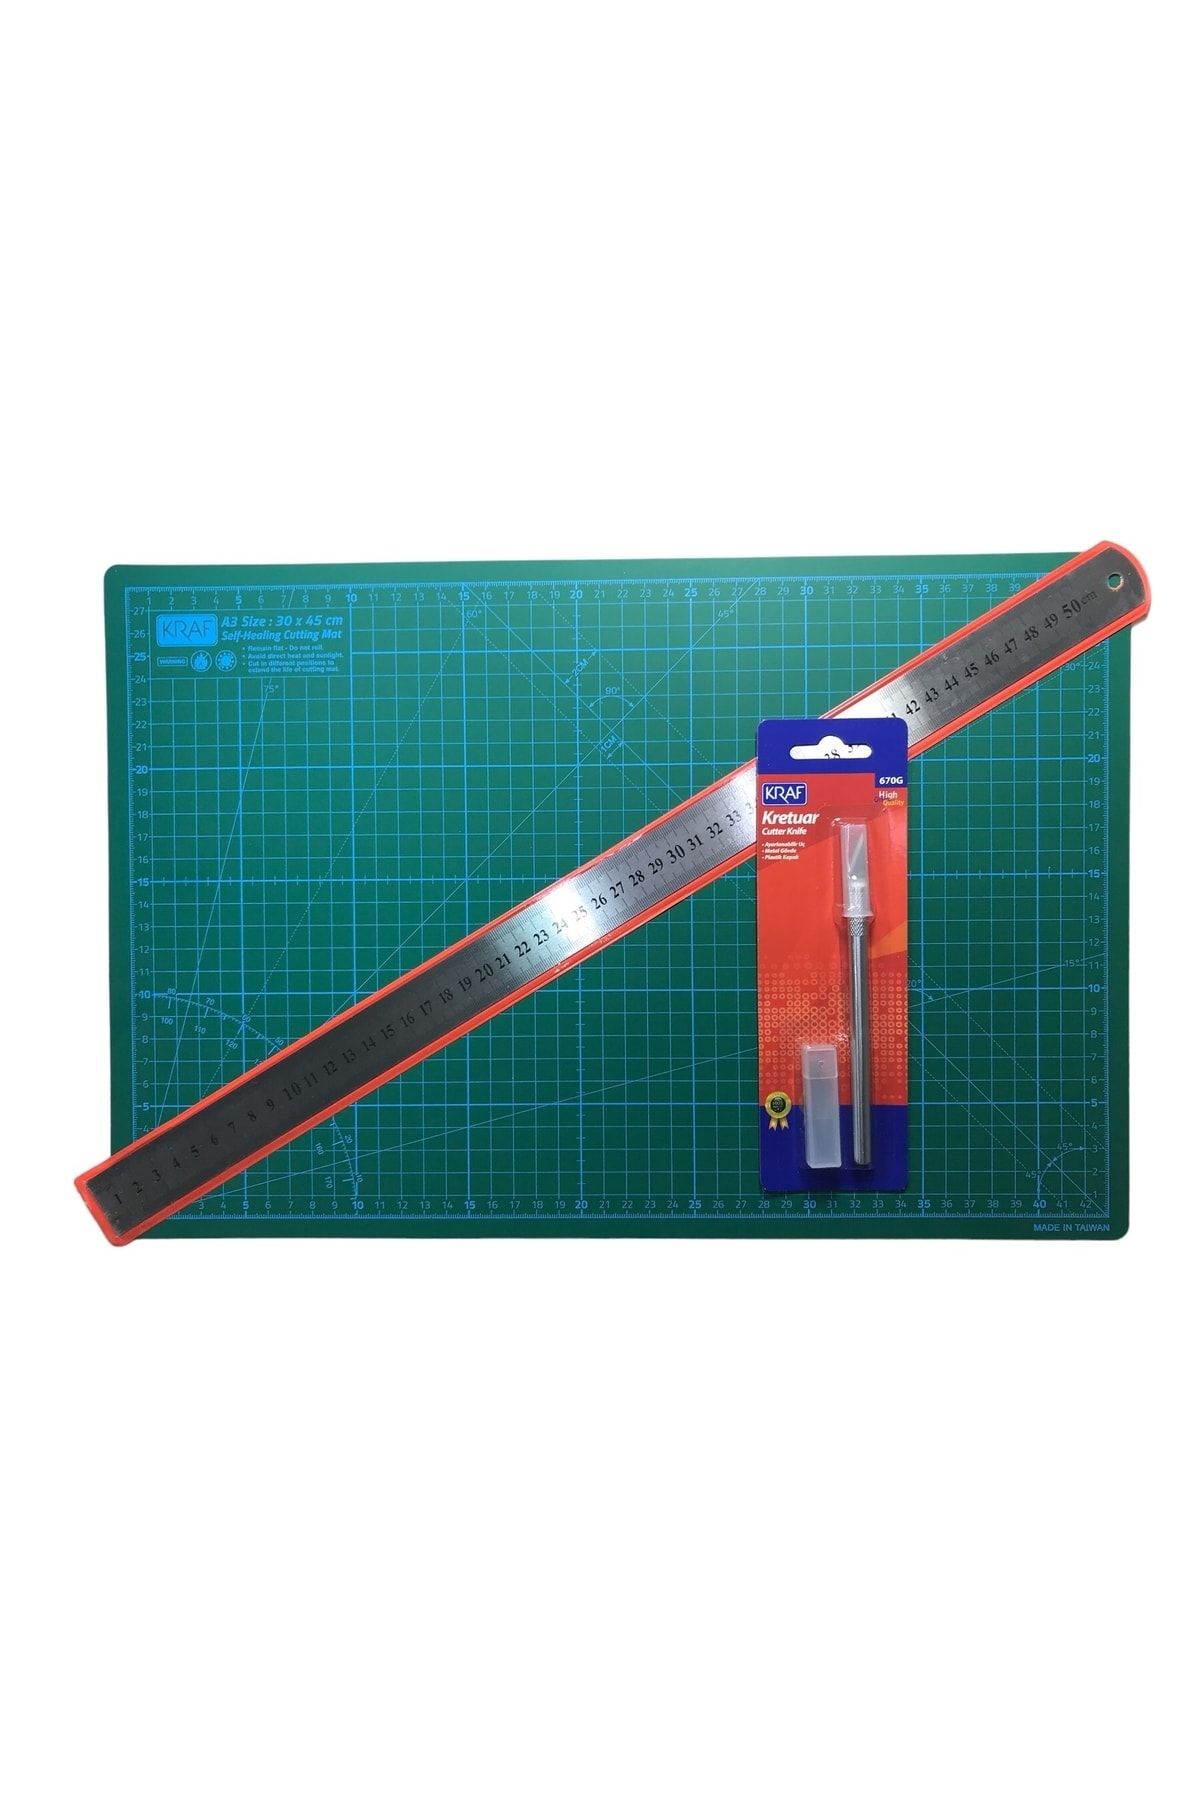 KRAF Profesyonel Kesim Seti A3 (30x45cm) + Kretuar Bıçağı + Cetvel 50cm